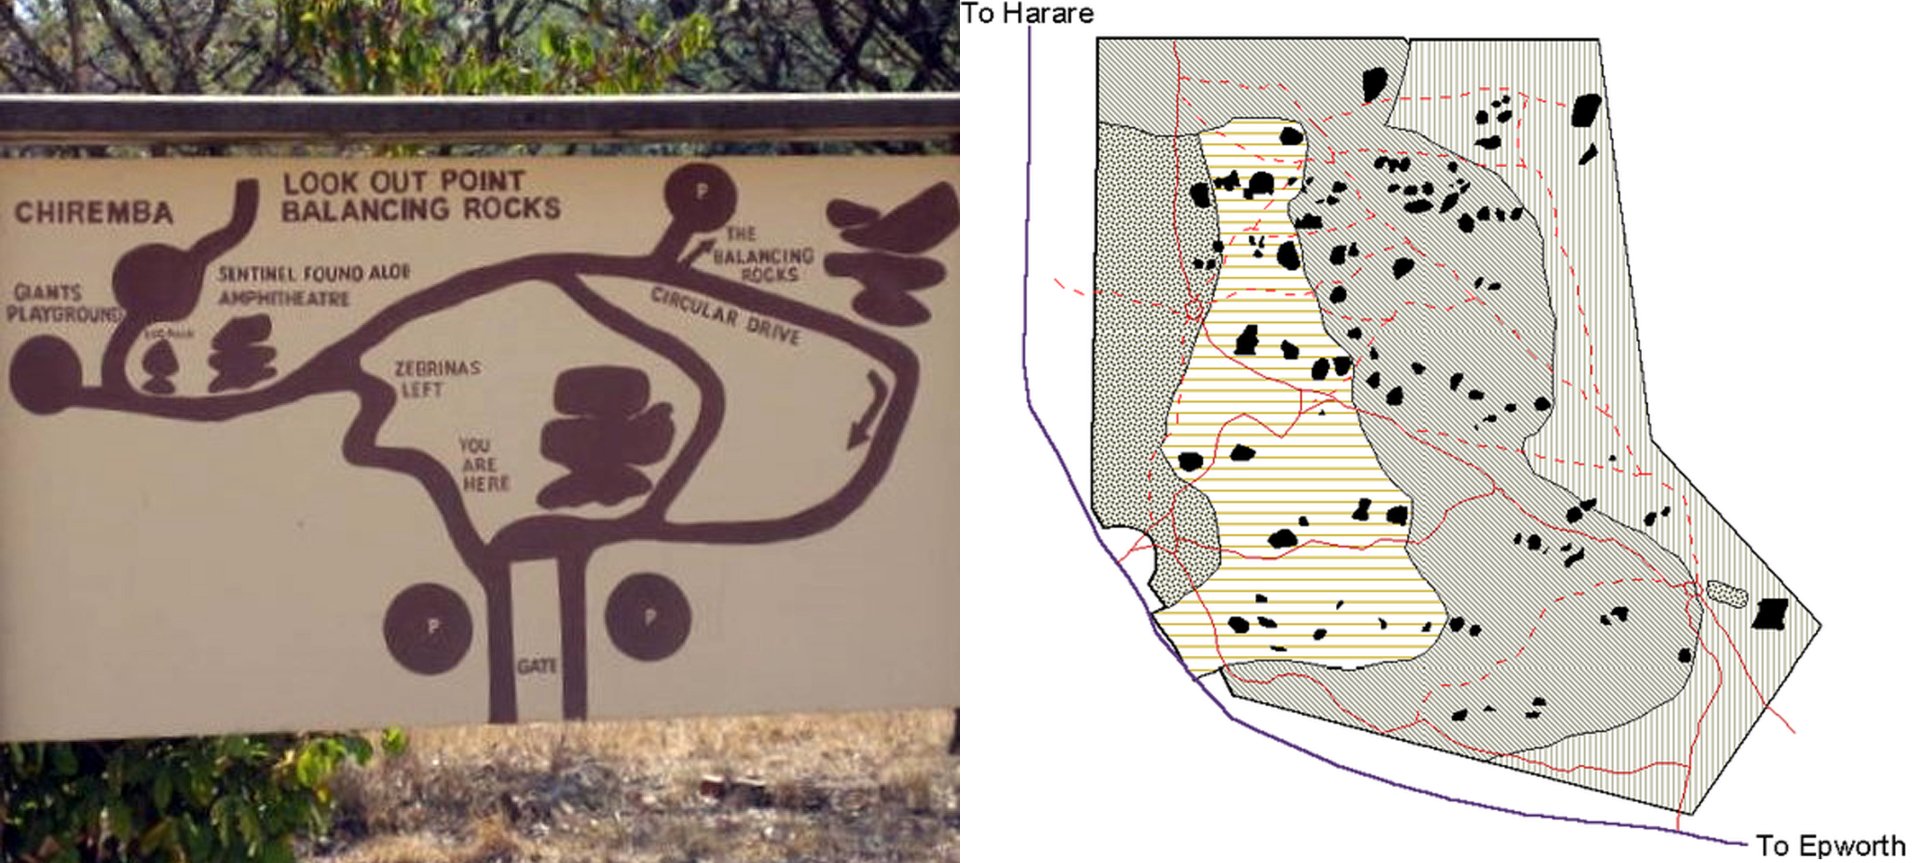 Obr. 2 A) Jednoduchá orientační mapka lokality Chiremba. Převzato z: http://www.mxlegal.com /zimbabwe-2007 B) Podrobná mapka lokality s vyznačením všech skalních formací. Převzato z: https://www.researchgate.net/figure/Vegetation-types-of-Chiremba-balanci